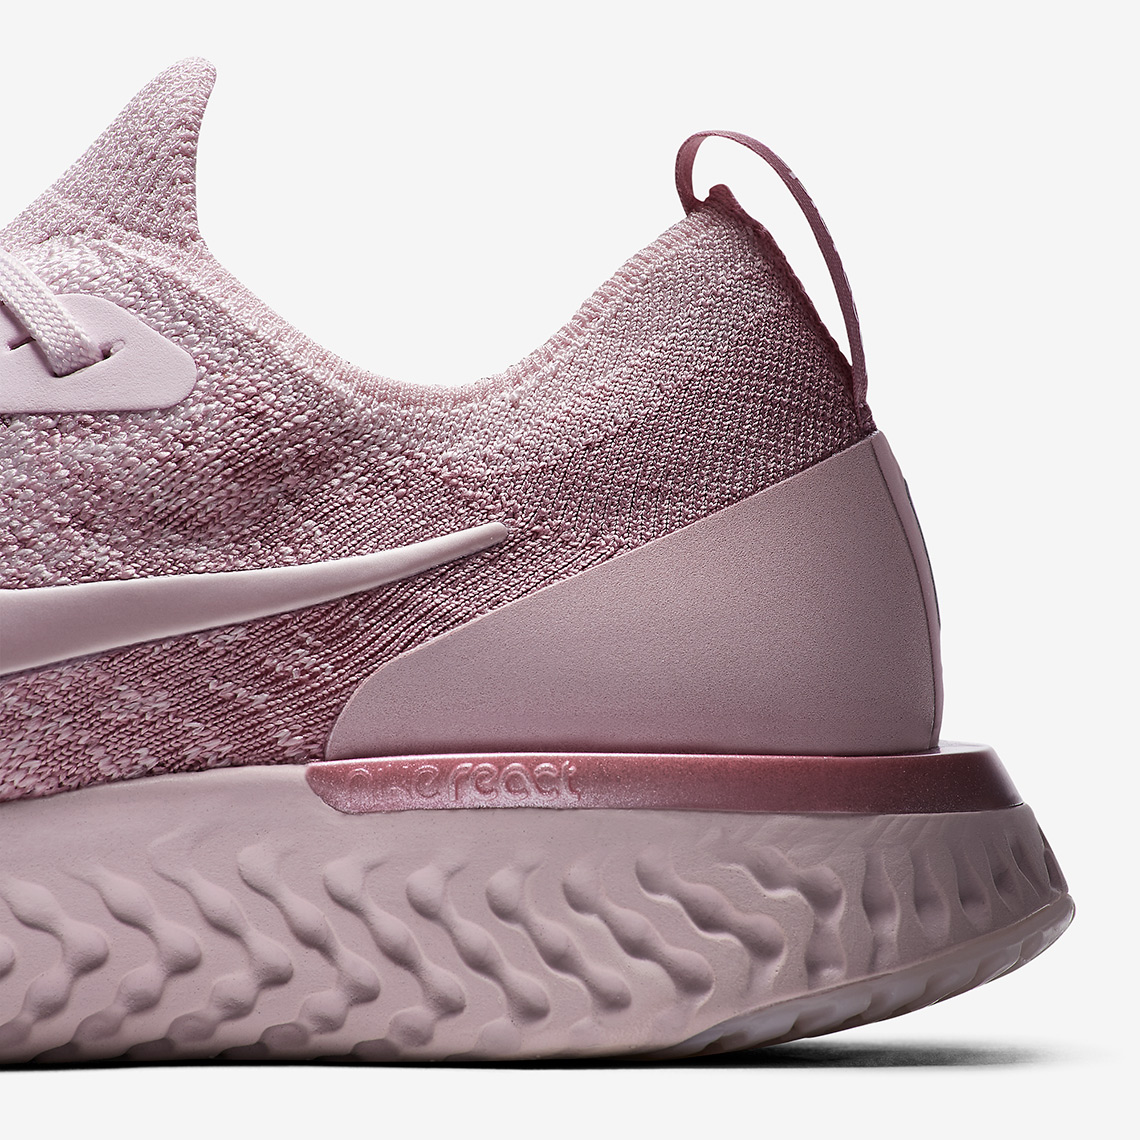 Nike Epic React Flyknit Pear Pink Release Info 6